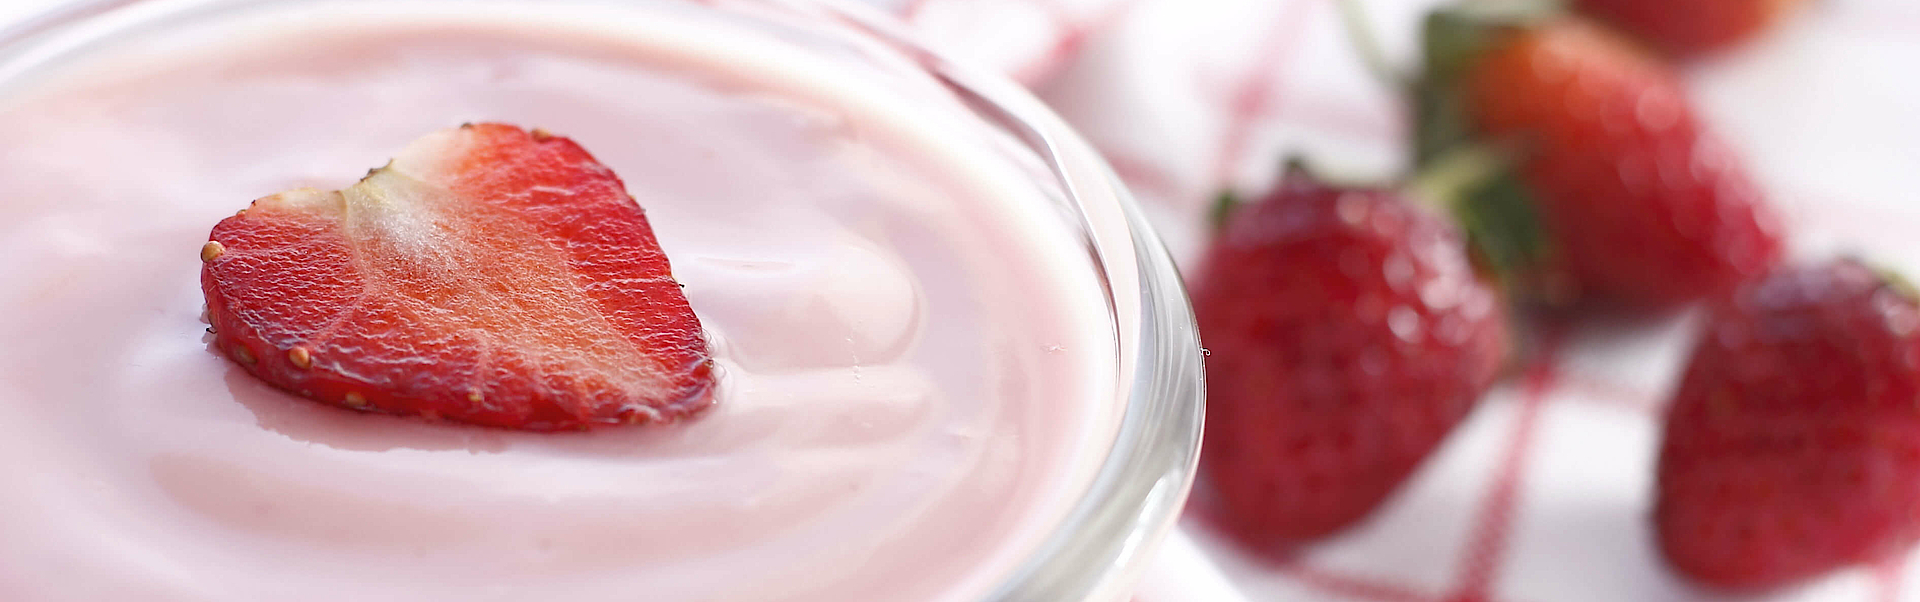 Erdbeerjoghurt mit Erdbeeren und Erdbeerscheiben als Deko.